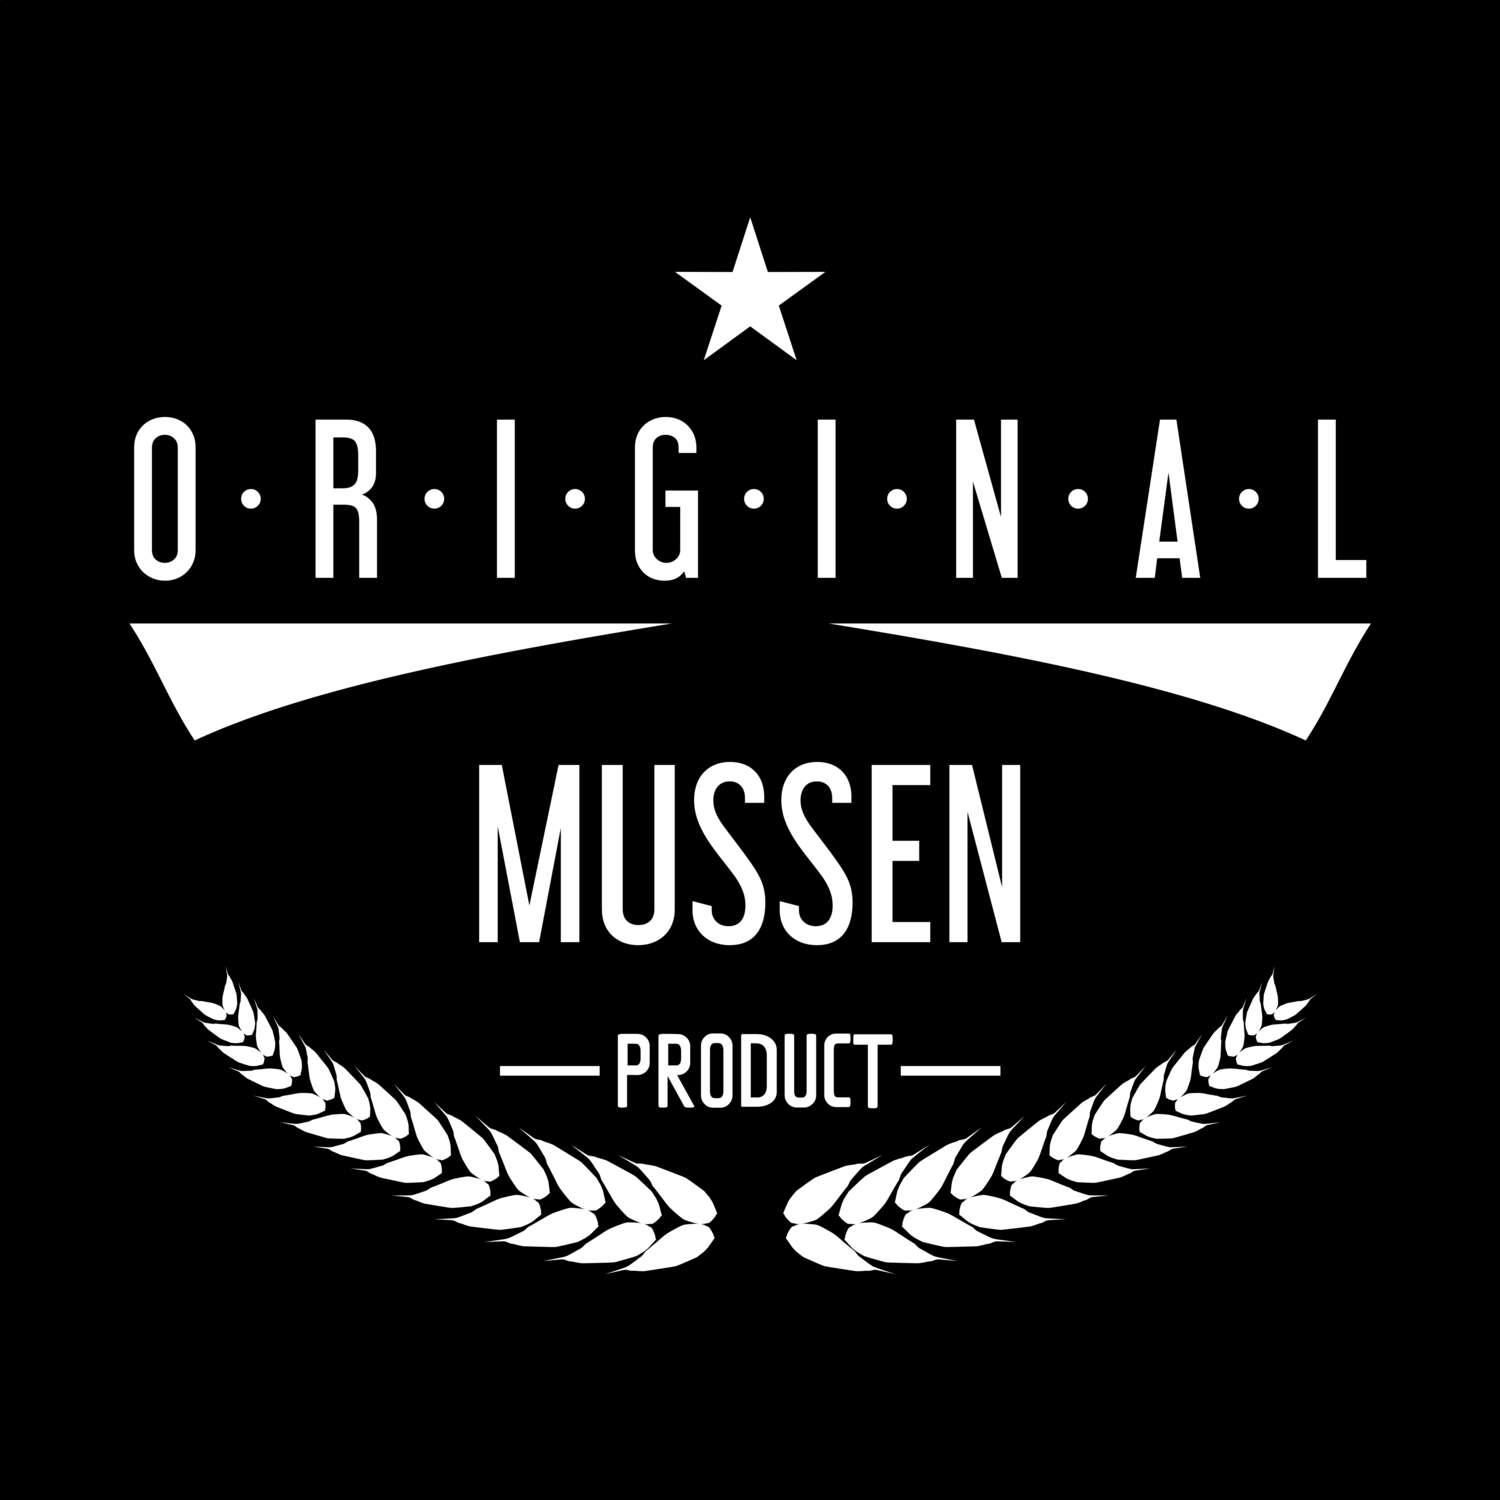 Mussen T-Shirt »Original Product«